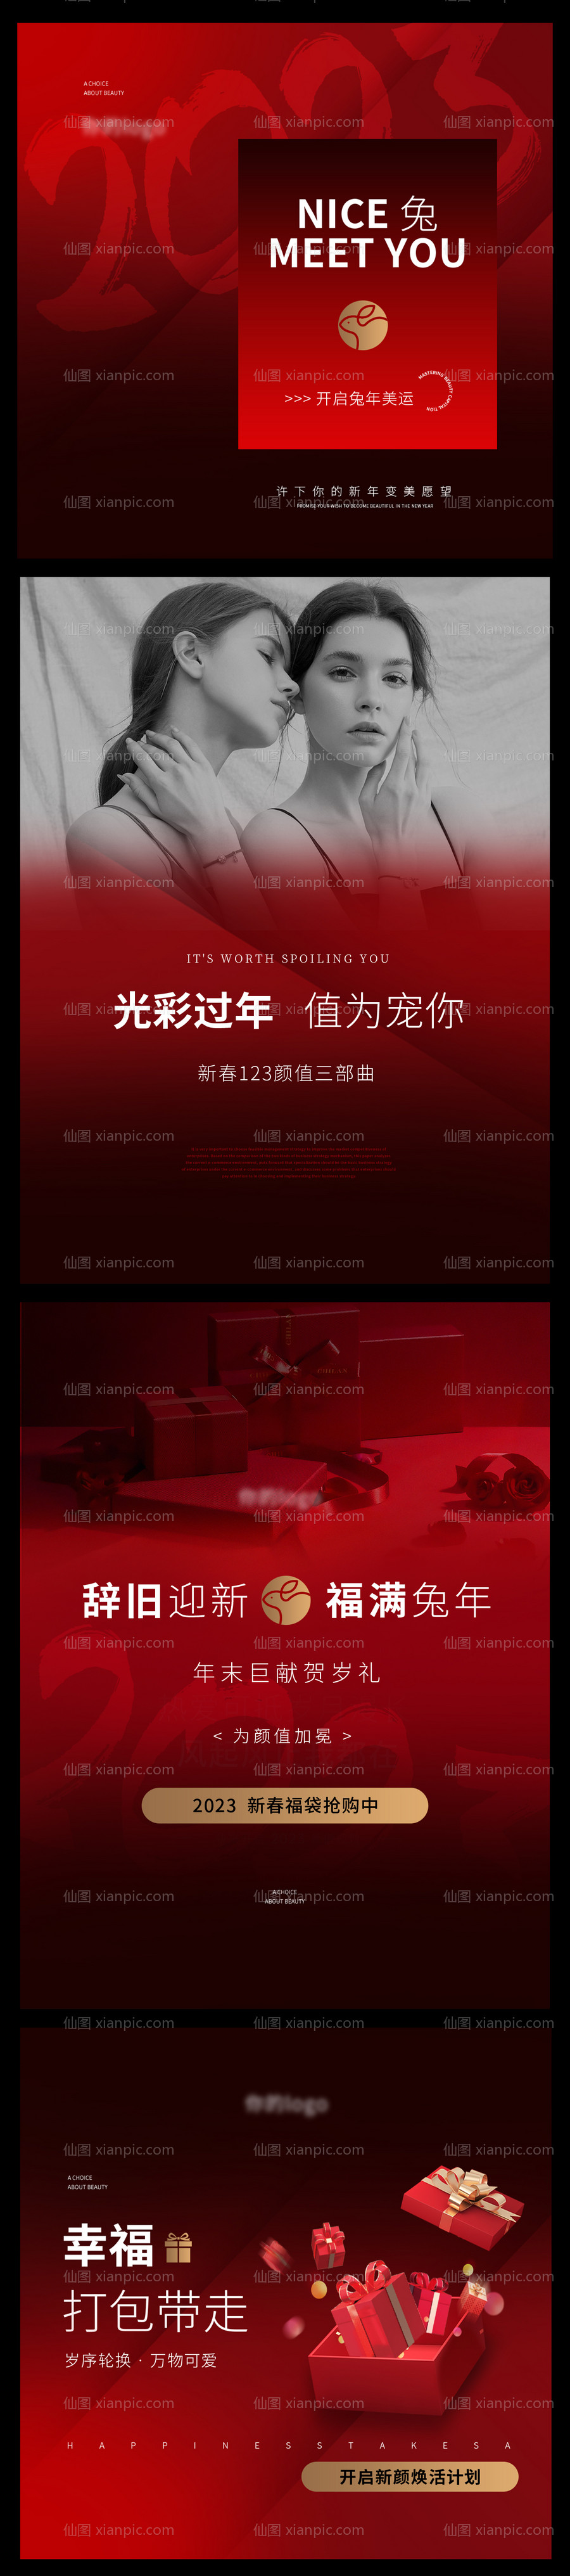 素材乐-美业红色质感新年钜惠活动海报长图